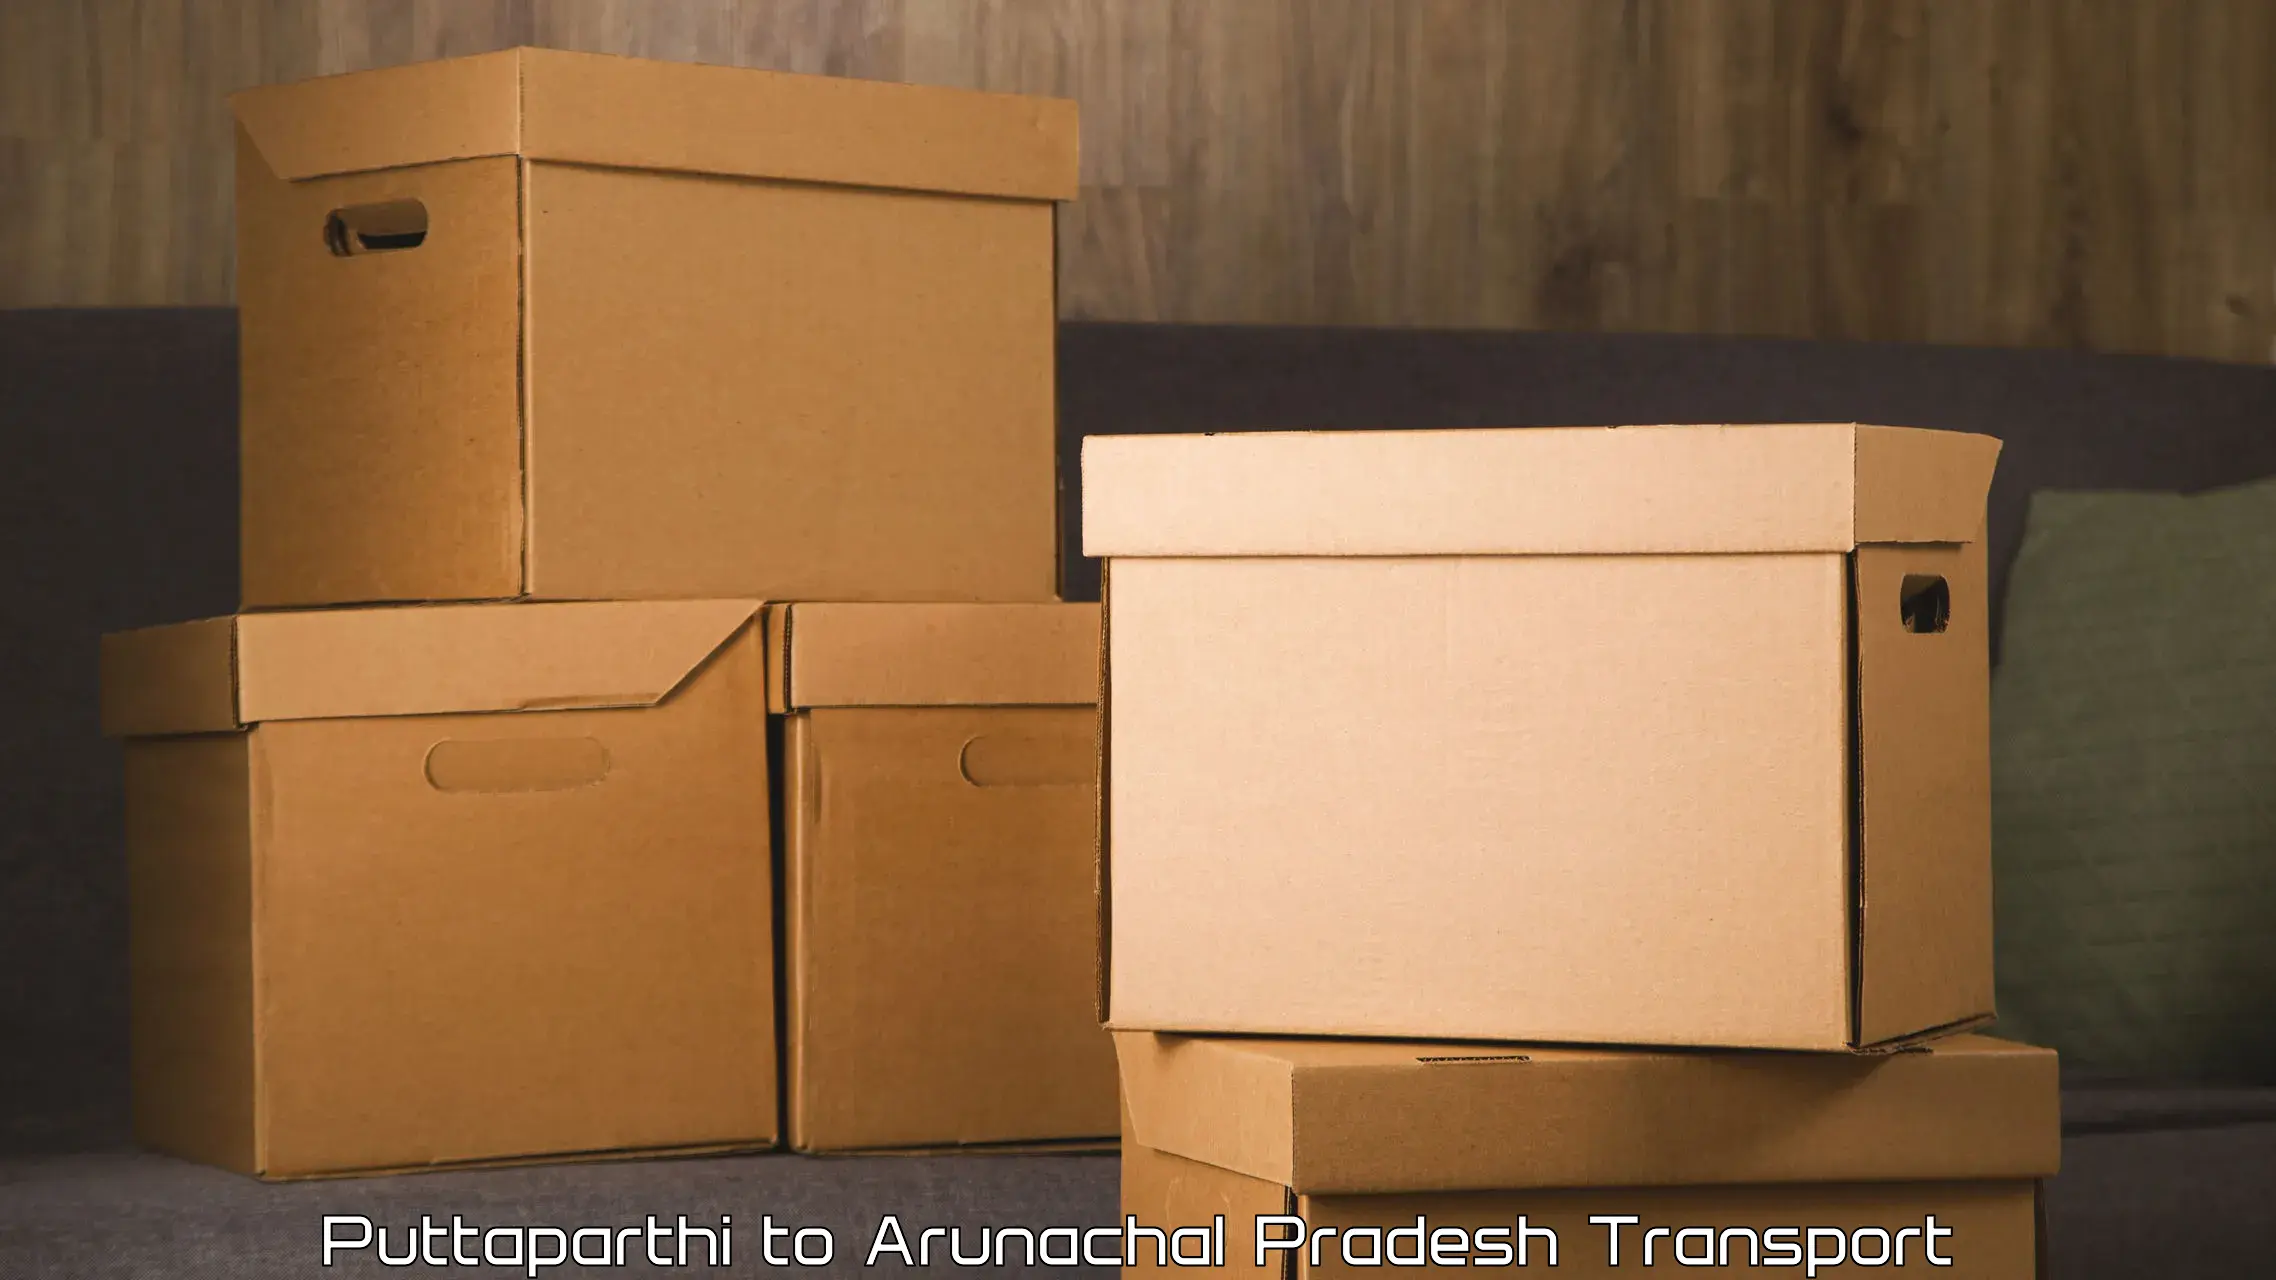 Land transport services Puttaparthi to Arunachal Pradesh